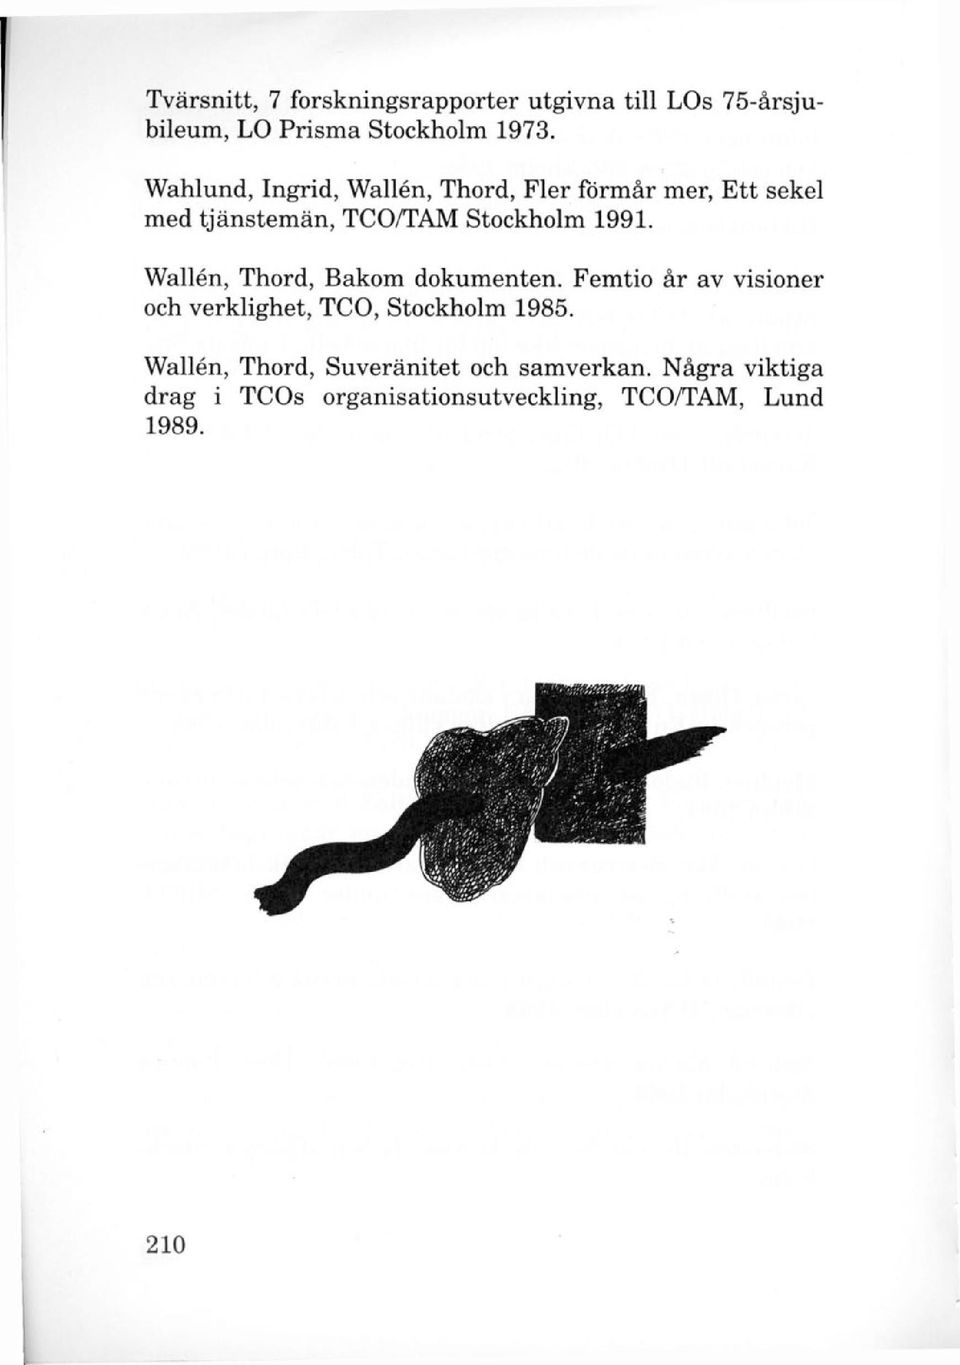 Wallén, Thord, Bakom dokumenten. Femtio år av visioner och verklighet, TCO, Stockholm 1985.